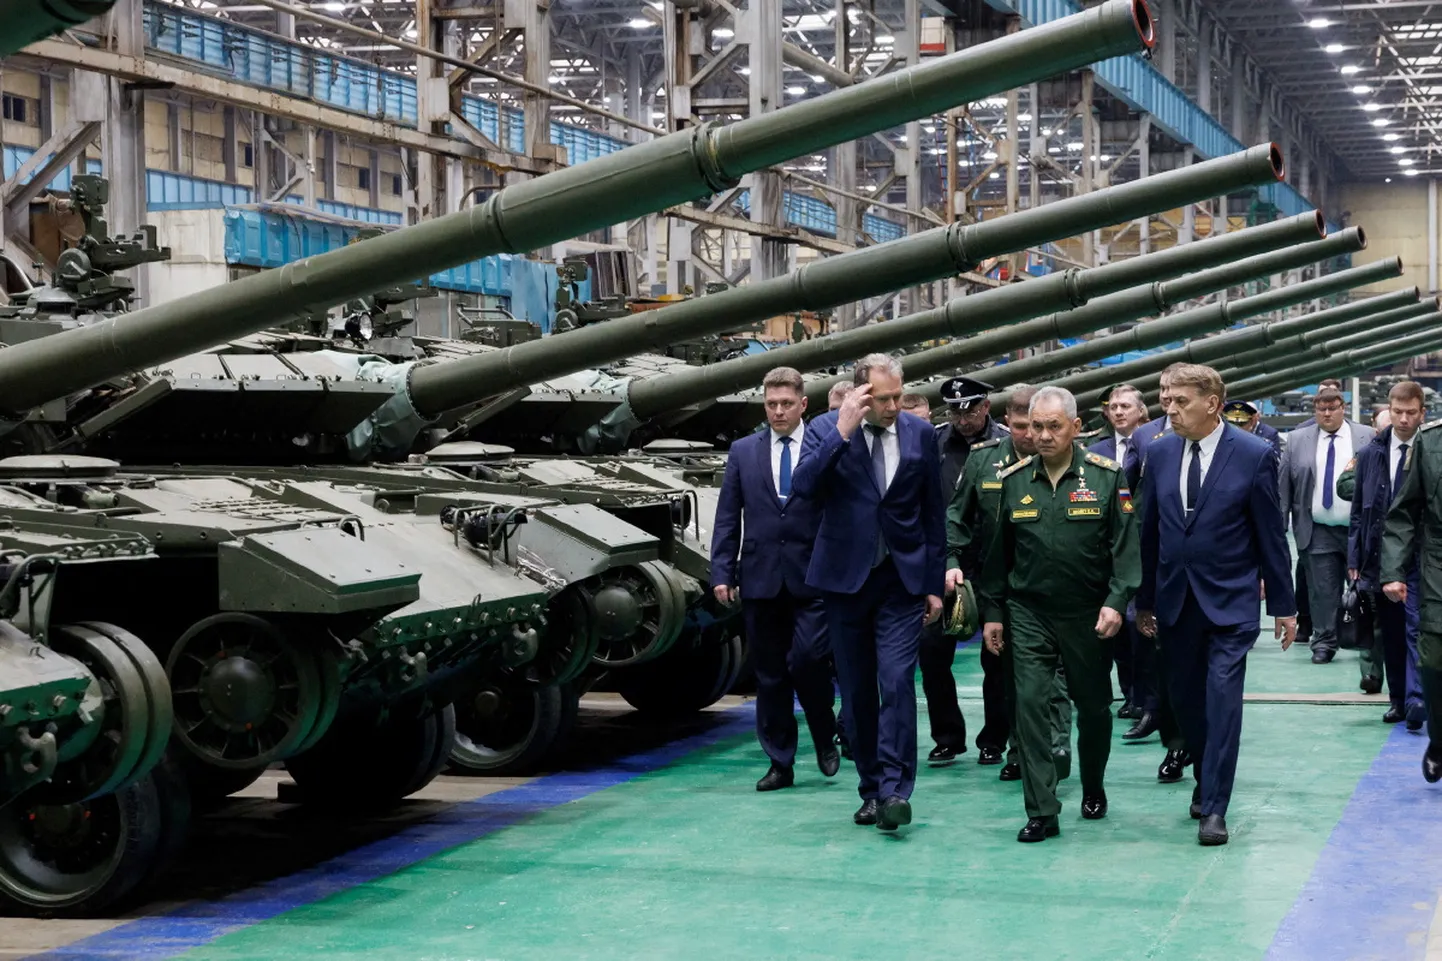 Vene kaitseminister Sergei Šoigu inspekteerimas tankitehast Omskis.